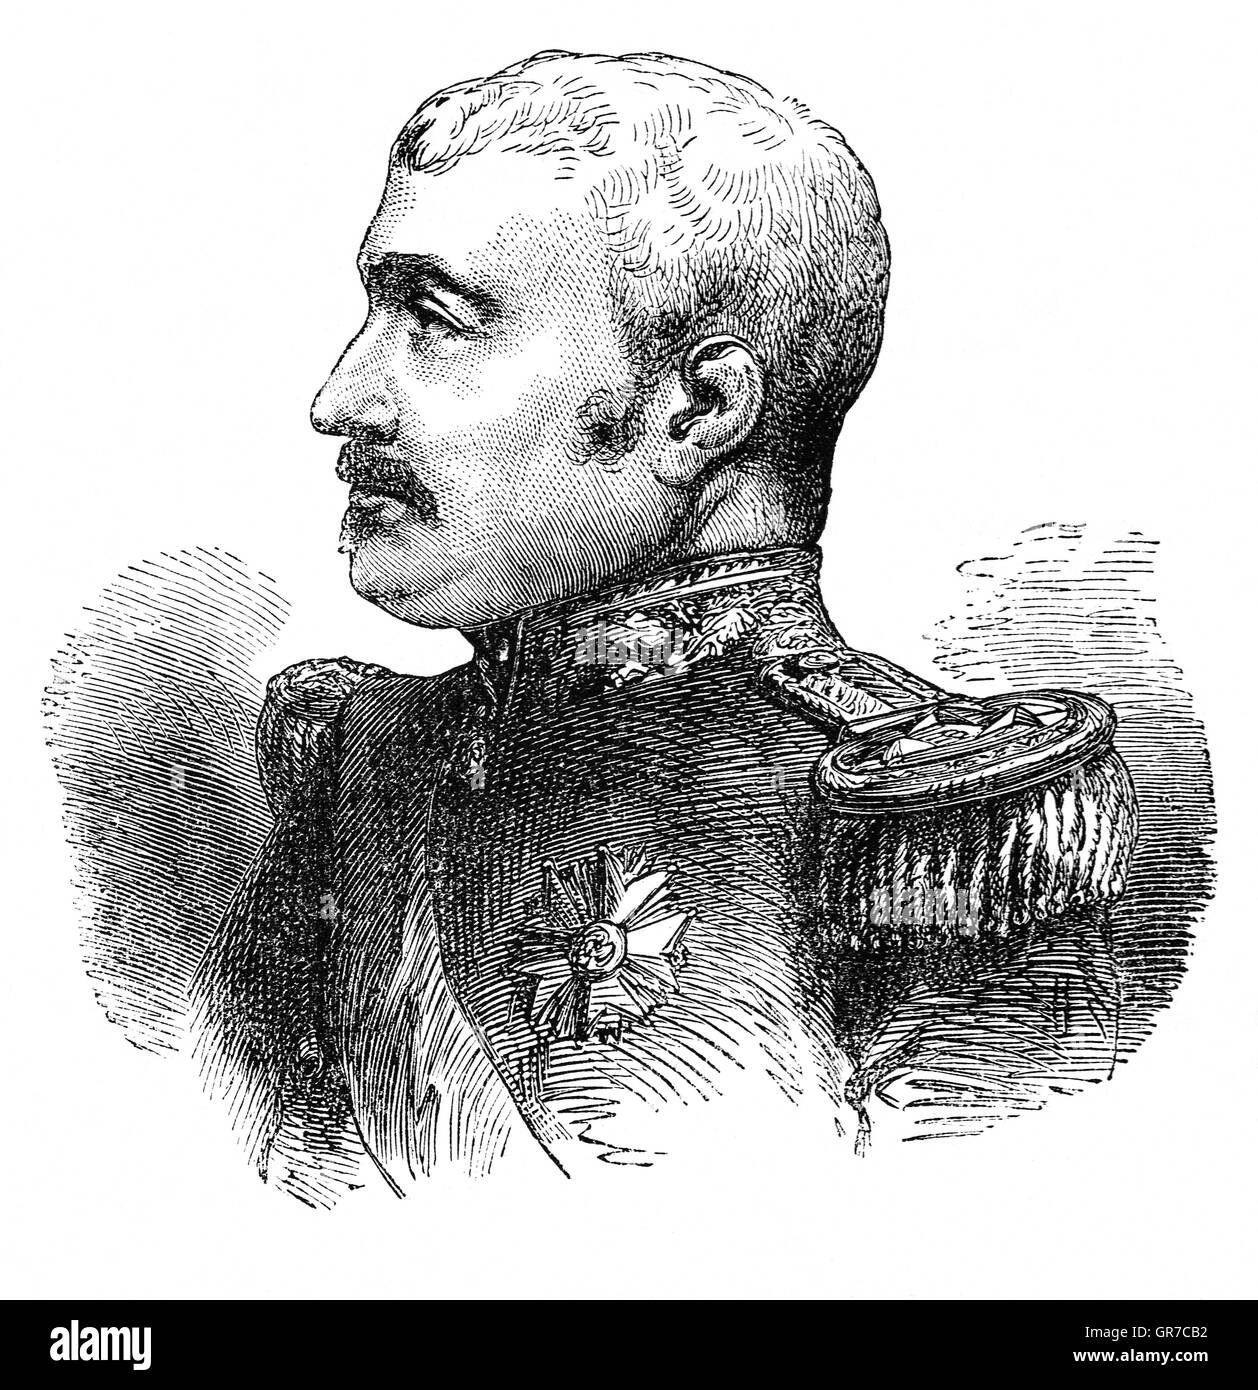 Aimable-Jean-Jacques Pélissier, 1° Duc de Malakoff (1794 -1864), era un Maresciallo di Francia. Nel 1855 egli è riuscito il maresciallo Canrobert come comandante in capo delle forze francesi prima dell'Assedio di Sebastopoli, un comando contrassegnato da implacabile pressione del nemico e inalterabile determinazione a condurre la campagna senza interferenze da parte di Parigi. La sua perseveranza fu coronata da successo in storming della torre di Malakoff conclusasi l assedio di Sebastopoli, il coronamento dell'anglo-francese della Guerra di Crimea contro la Russia con la vittoria. Foto Stock